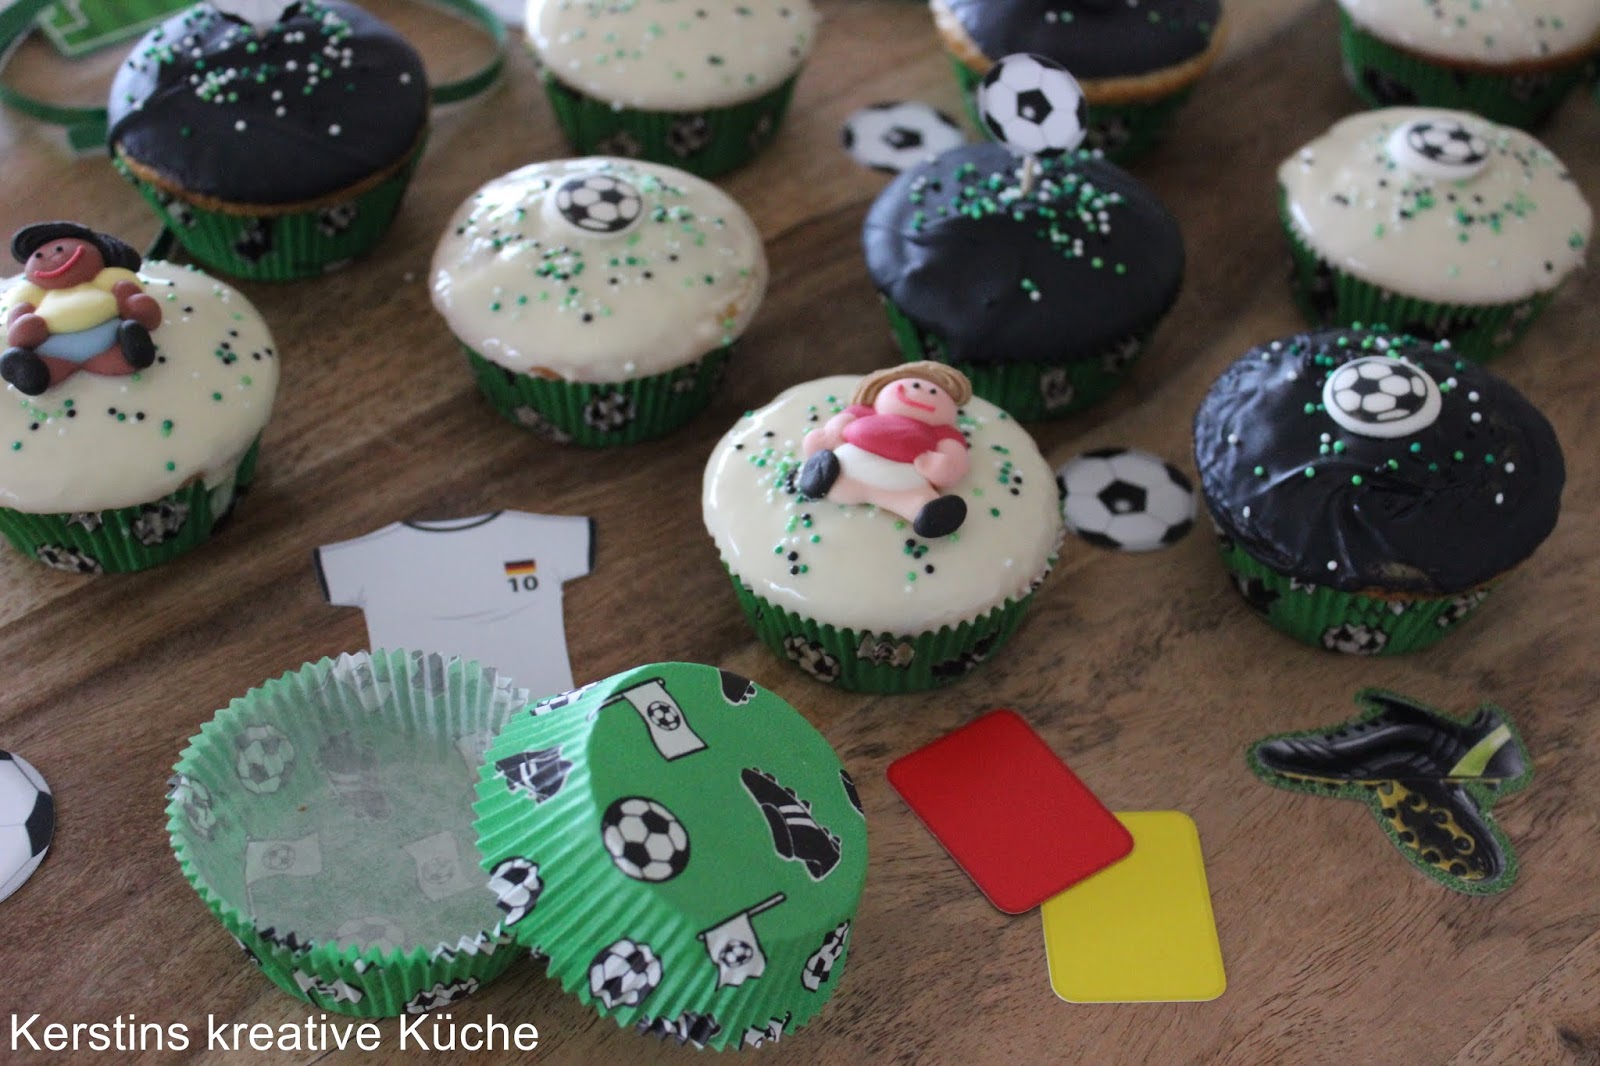 Kerstins kreative Küche: Fußball Muffins